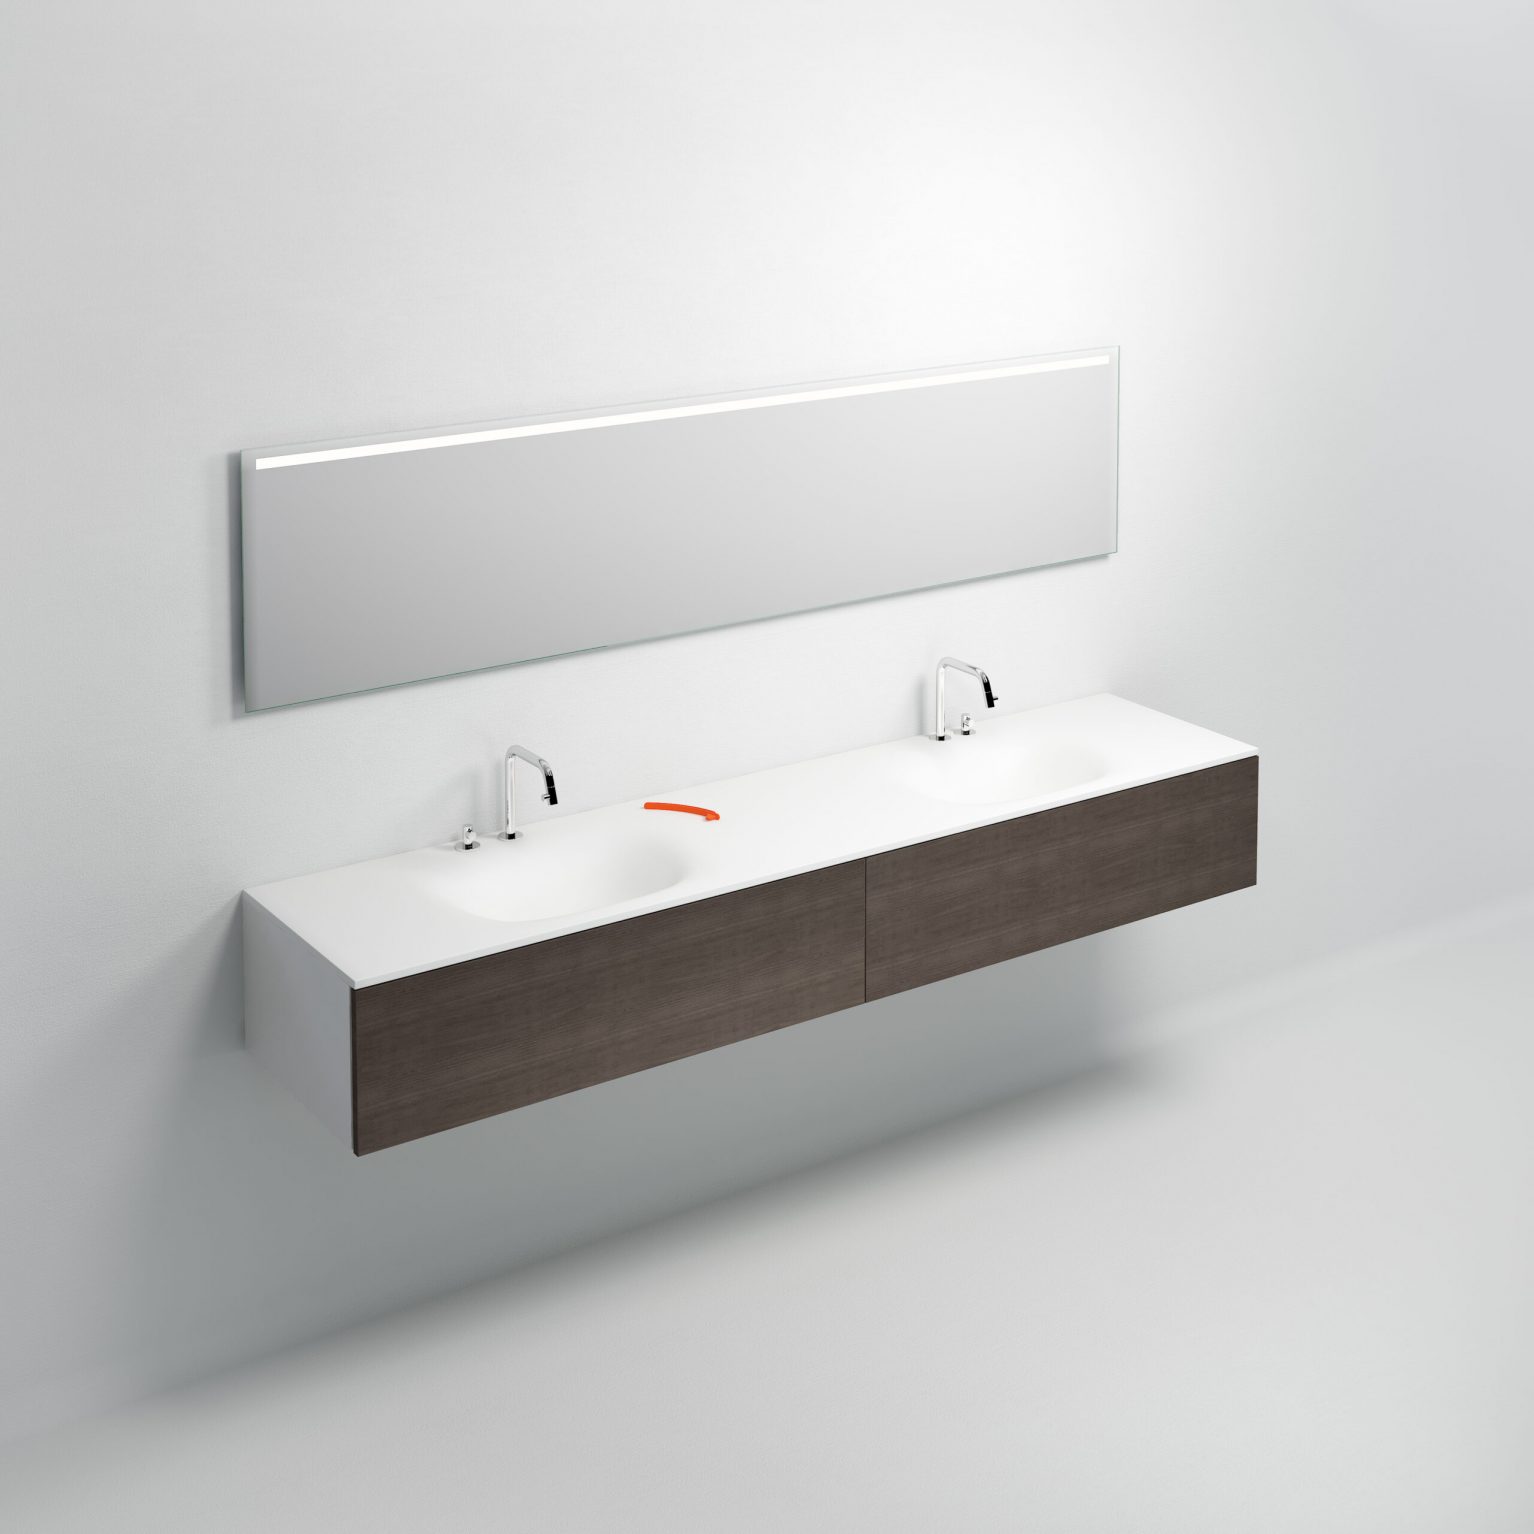 wastafel-wit-toilet-badkamer-luxe-sanitair-Hammock-clou-CL021307242-aluite-220cm-wasbak-waskom-twee-dubbel-blad-kraangat-afvoer-shadow-Sp